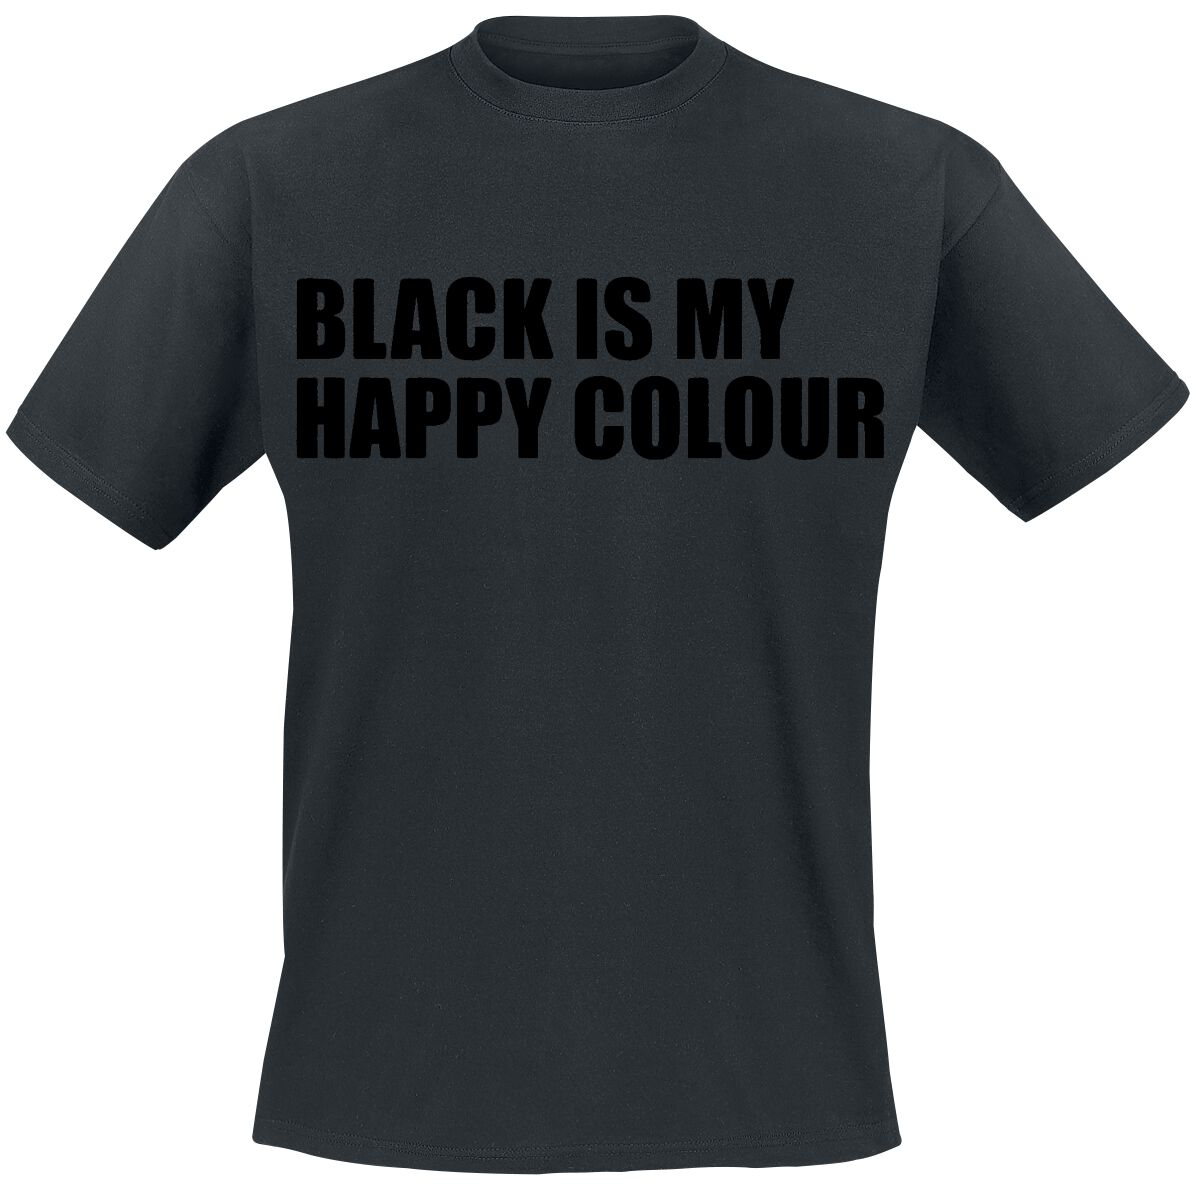 Sprüche T-Shirt - Black Is My Happy Colour - M bis 5XL - für Männer - Größe L - schwarz